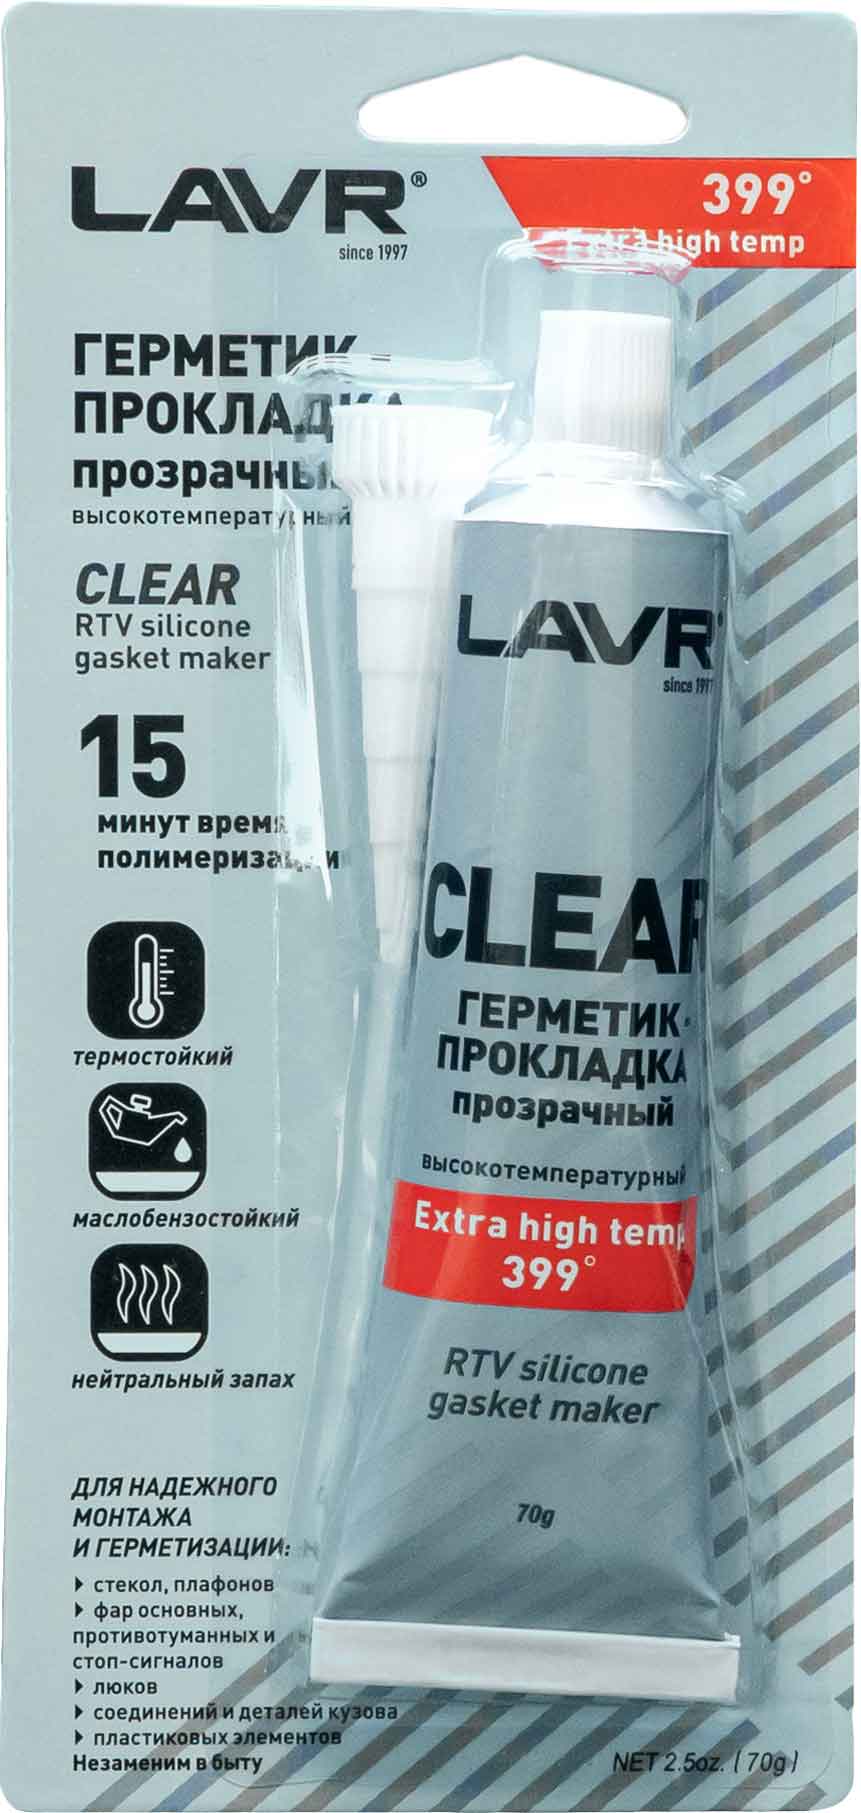 Герметик-прокладка LAVR прозрачный высокотемпературный Ln1740